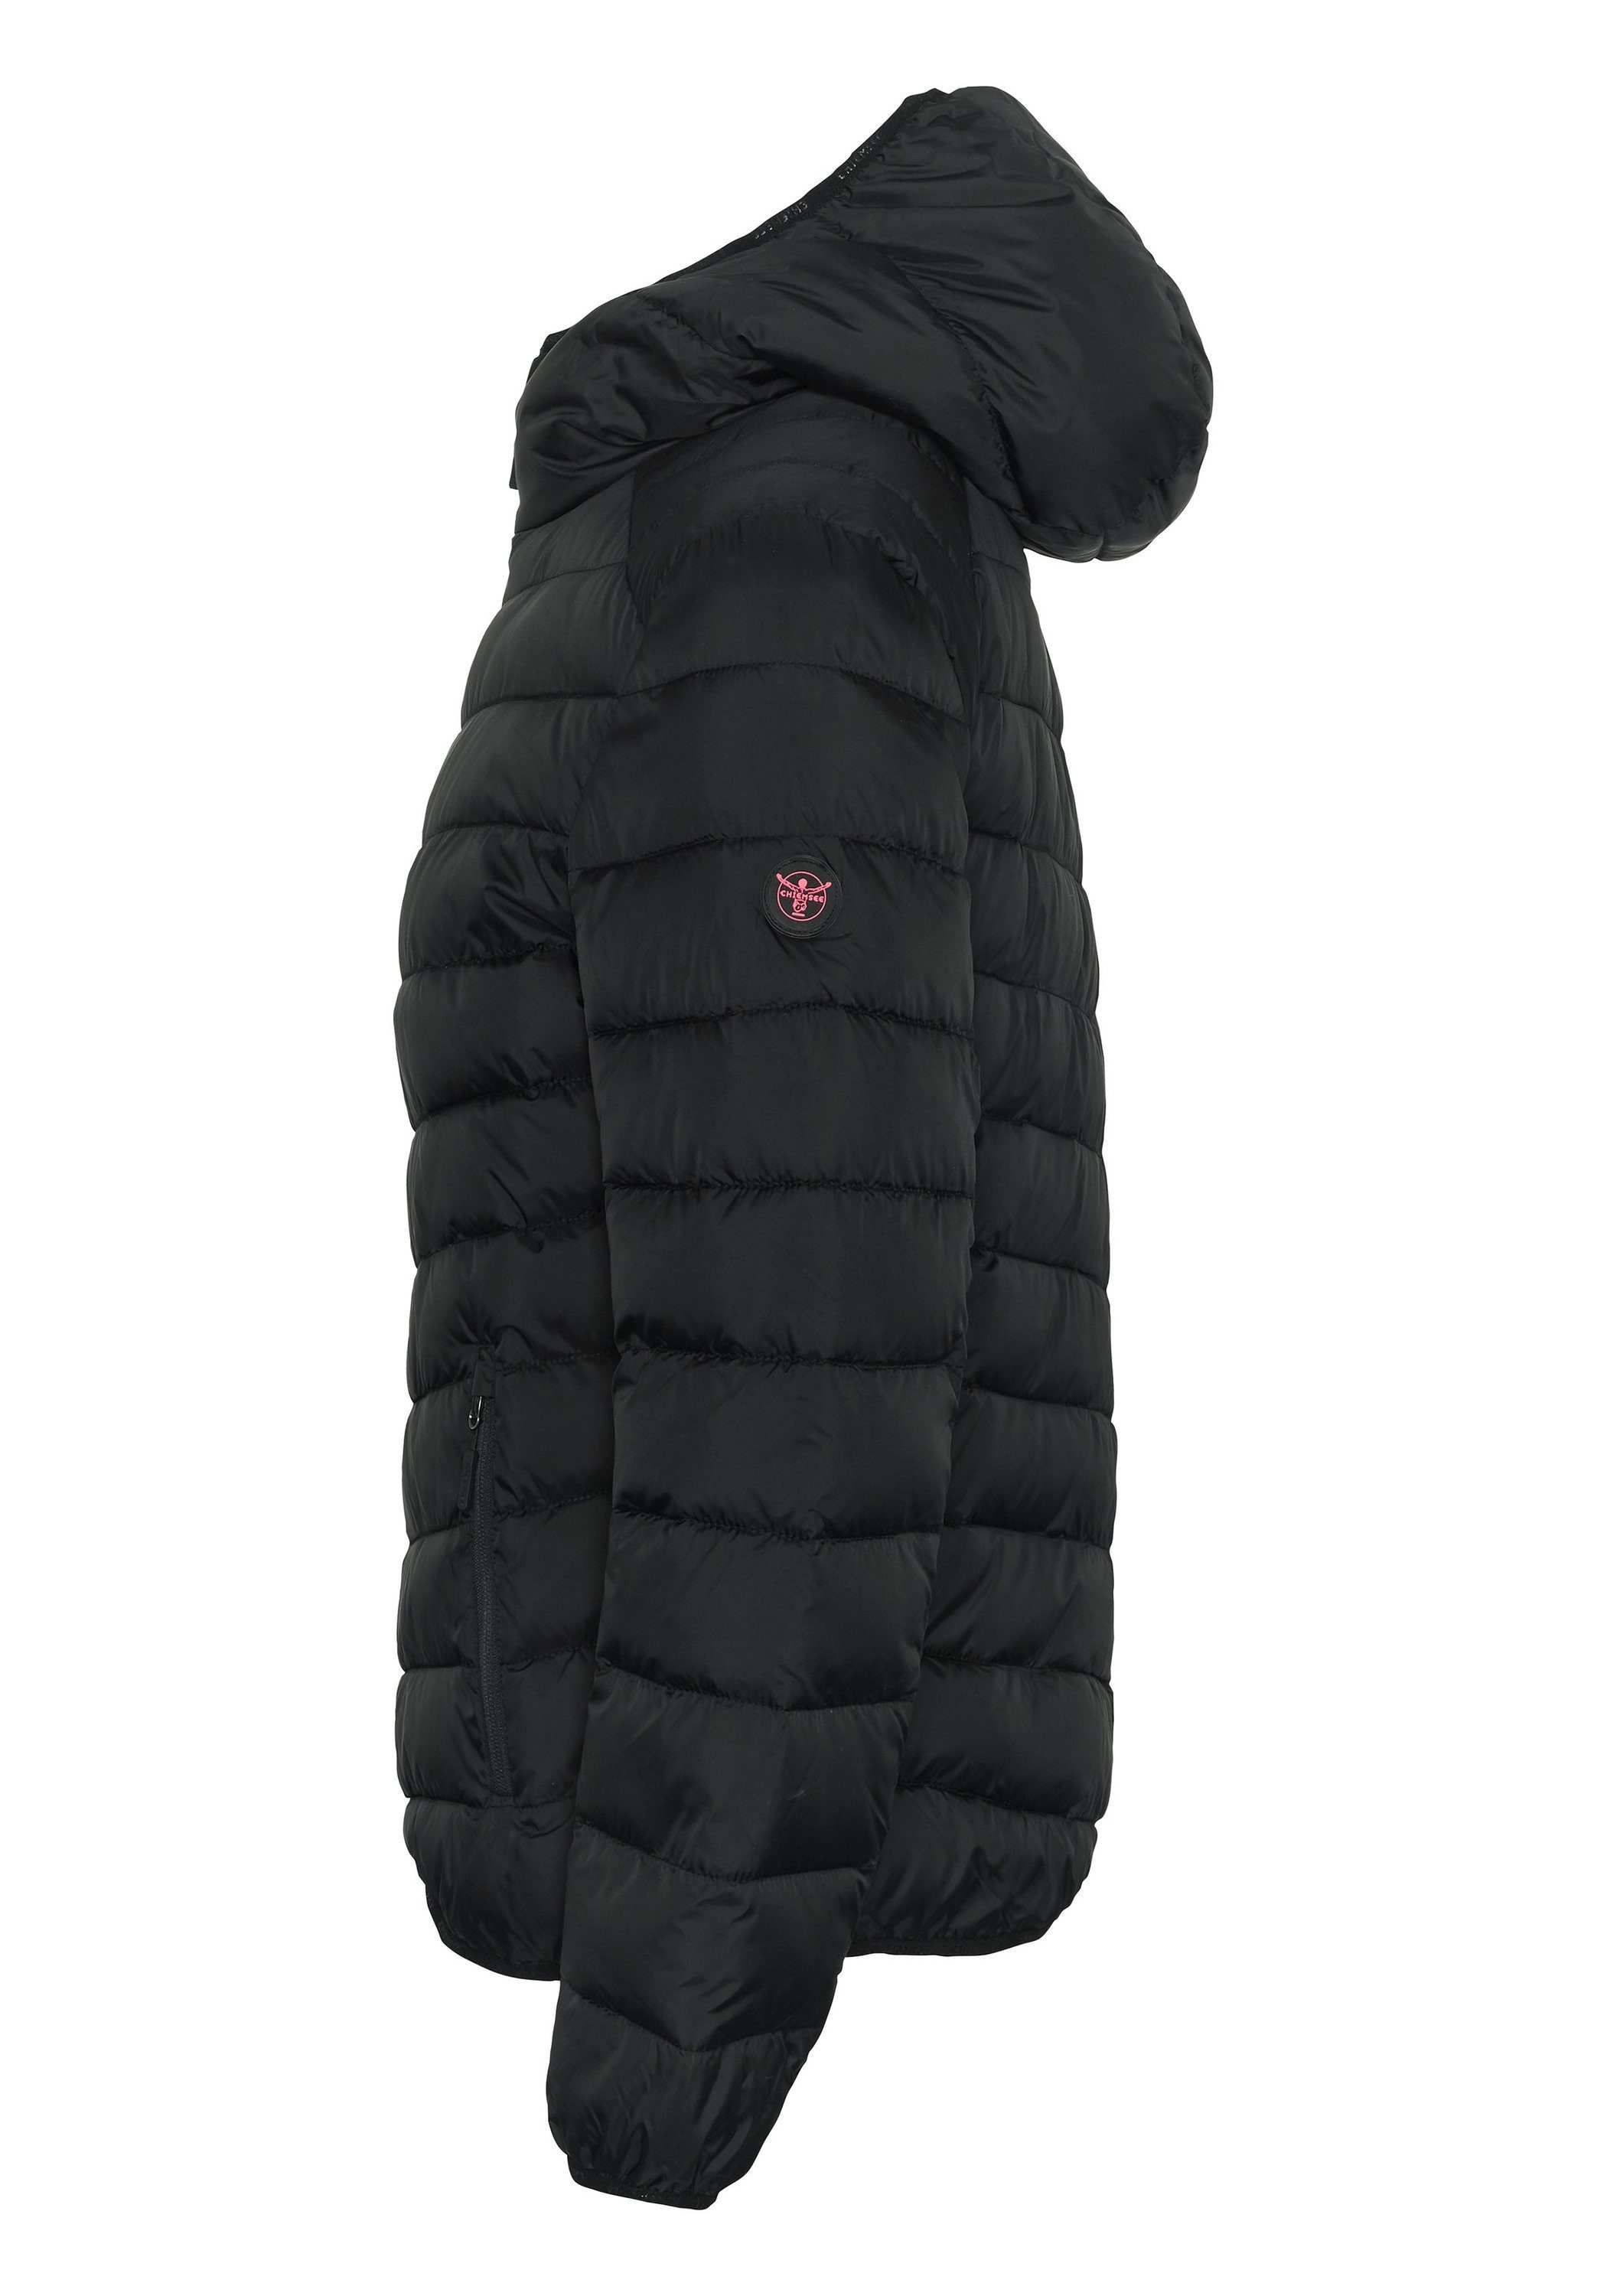 Outdoorjacke Wattierte Black 1 Jacke moderner Chiemsee Stepp-Optik Beauty in 19-3911